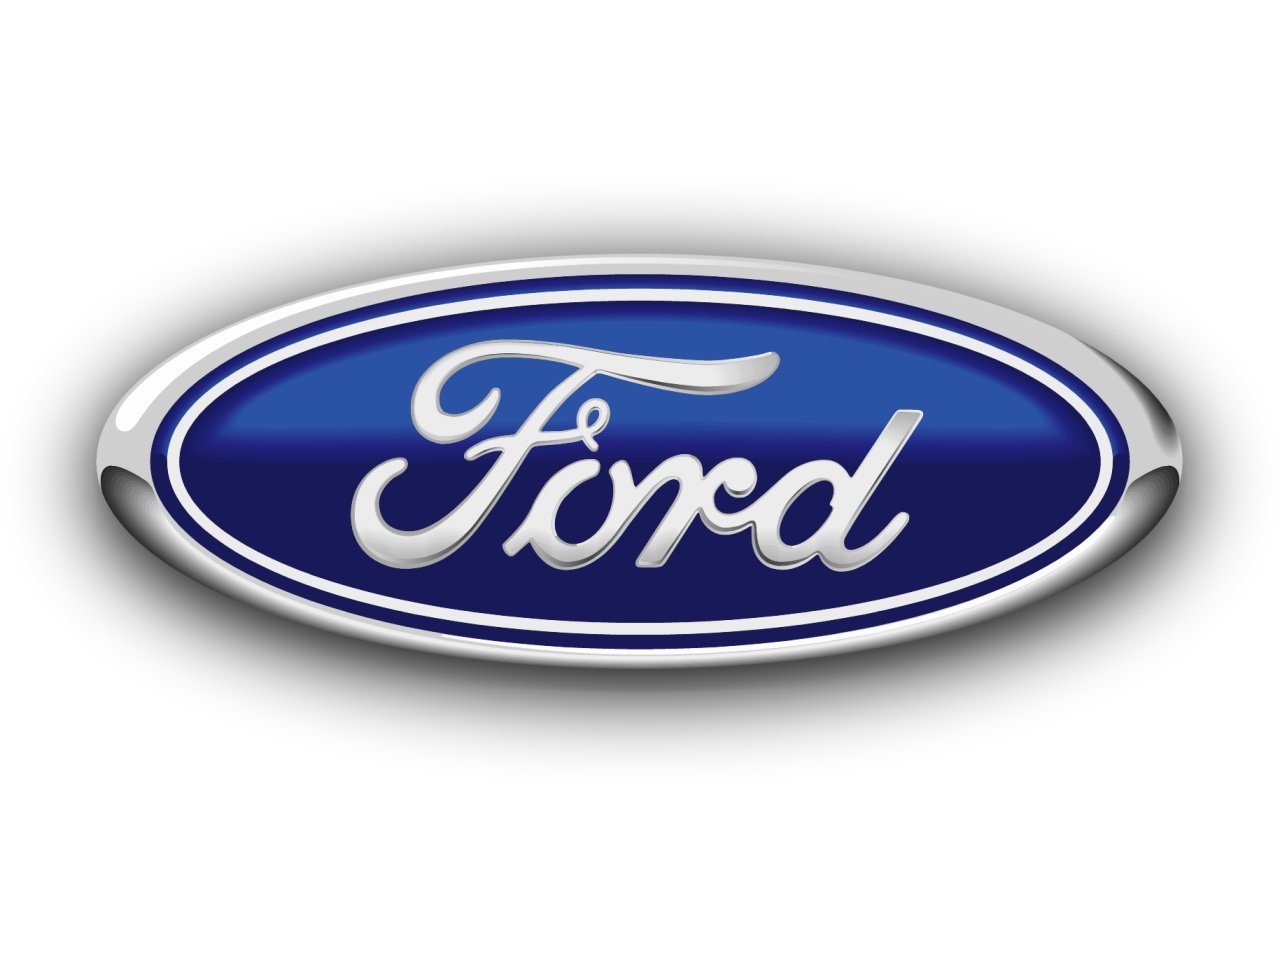 2001 Ford focus engine dies #1